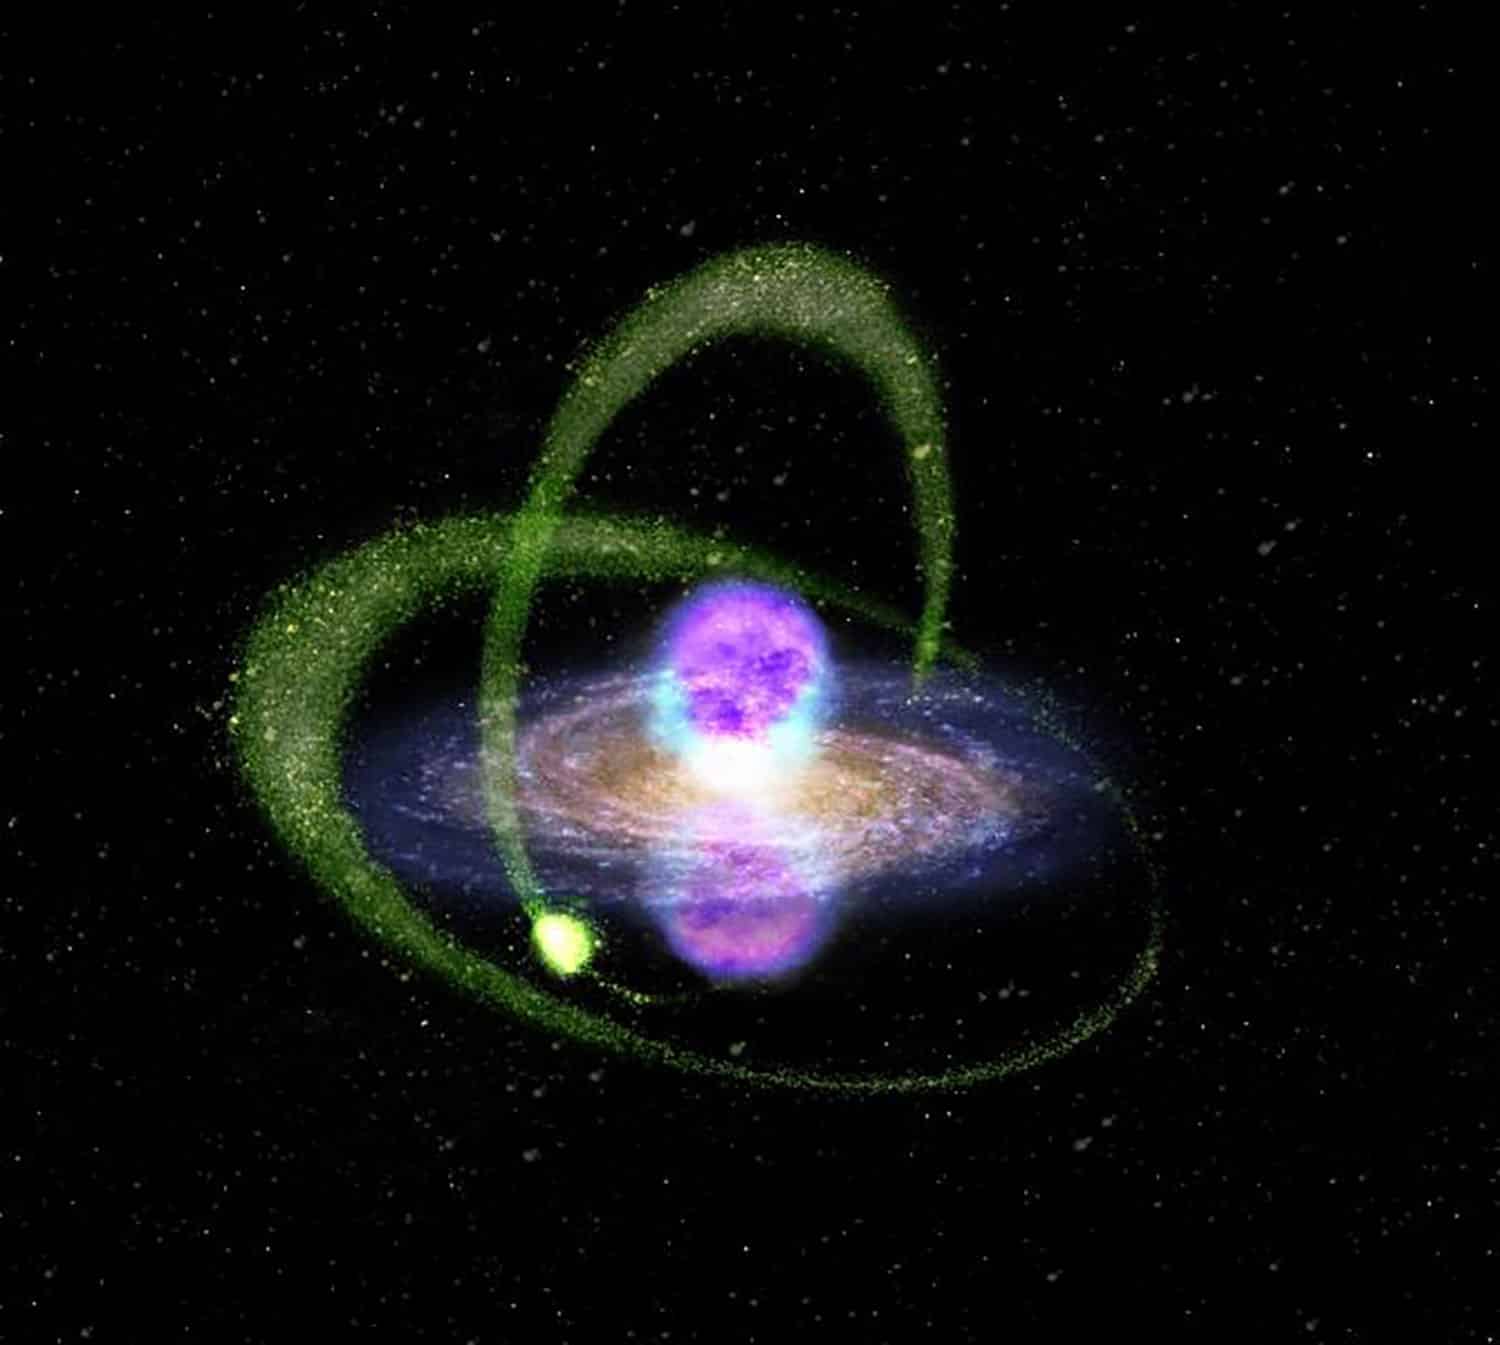 감마선을 통해 과학자들은 암흑 물질로 가득 찬 작은 위성 은하를 발견했습니다